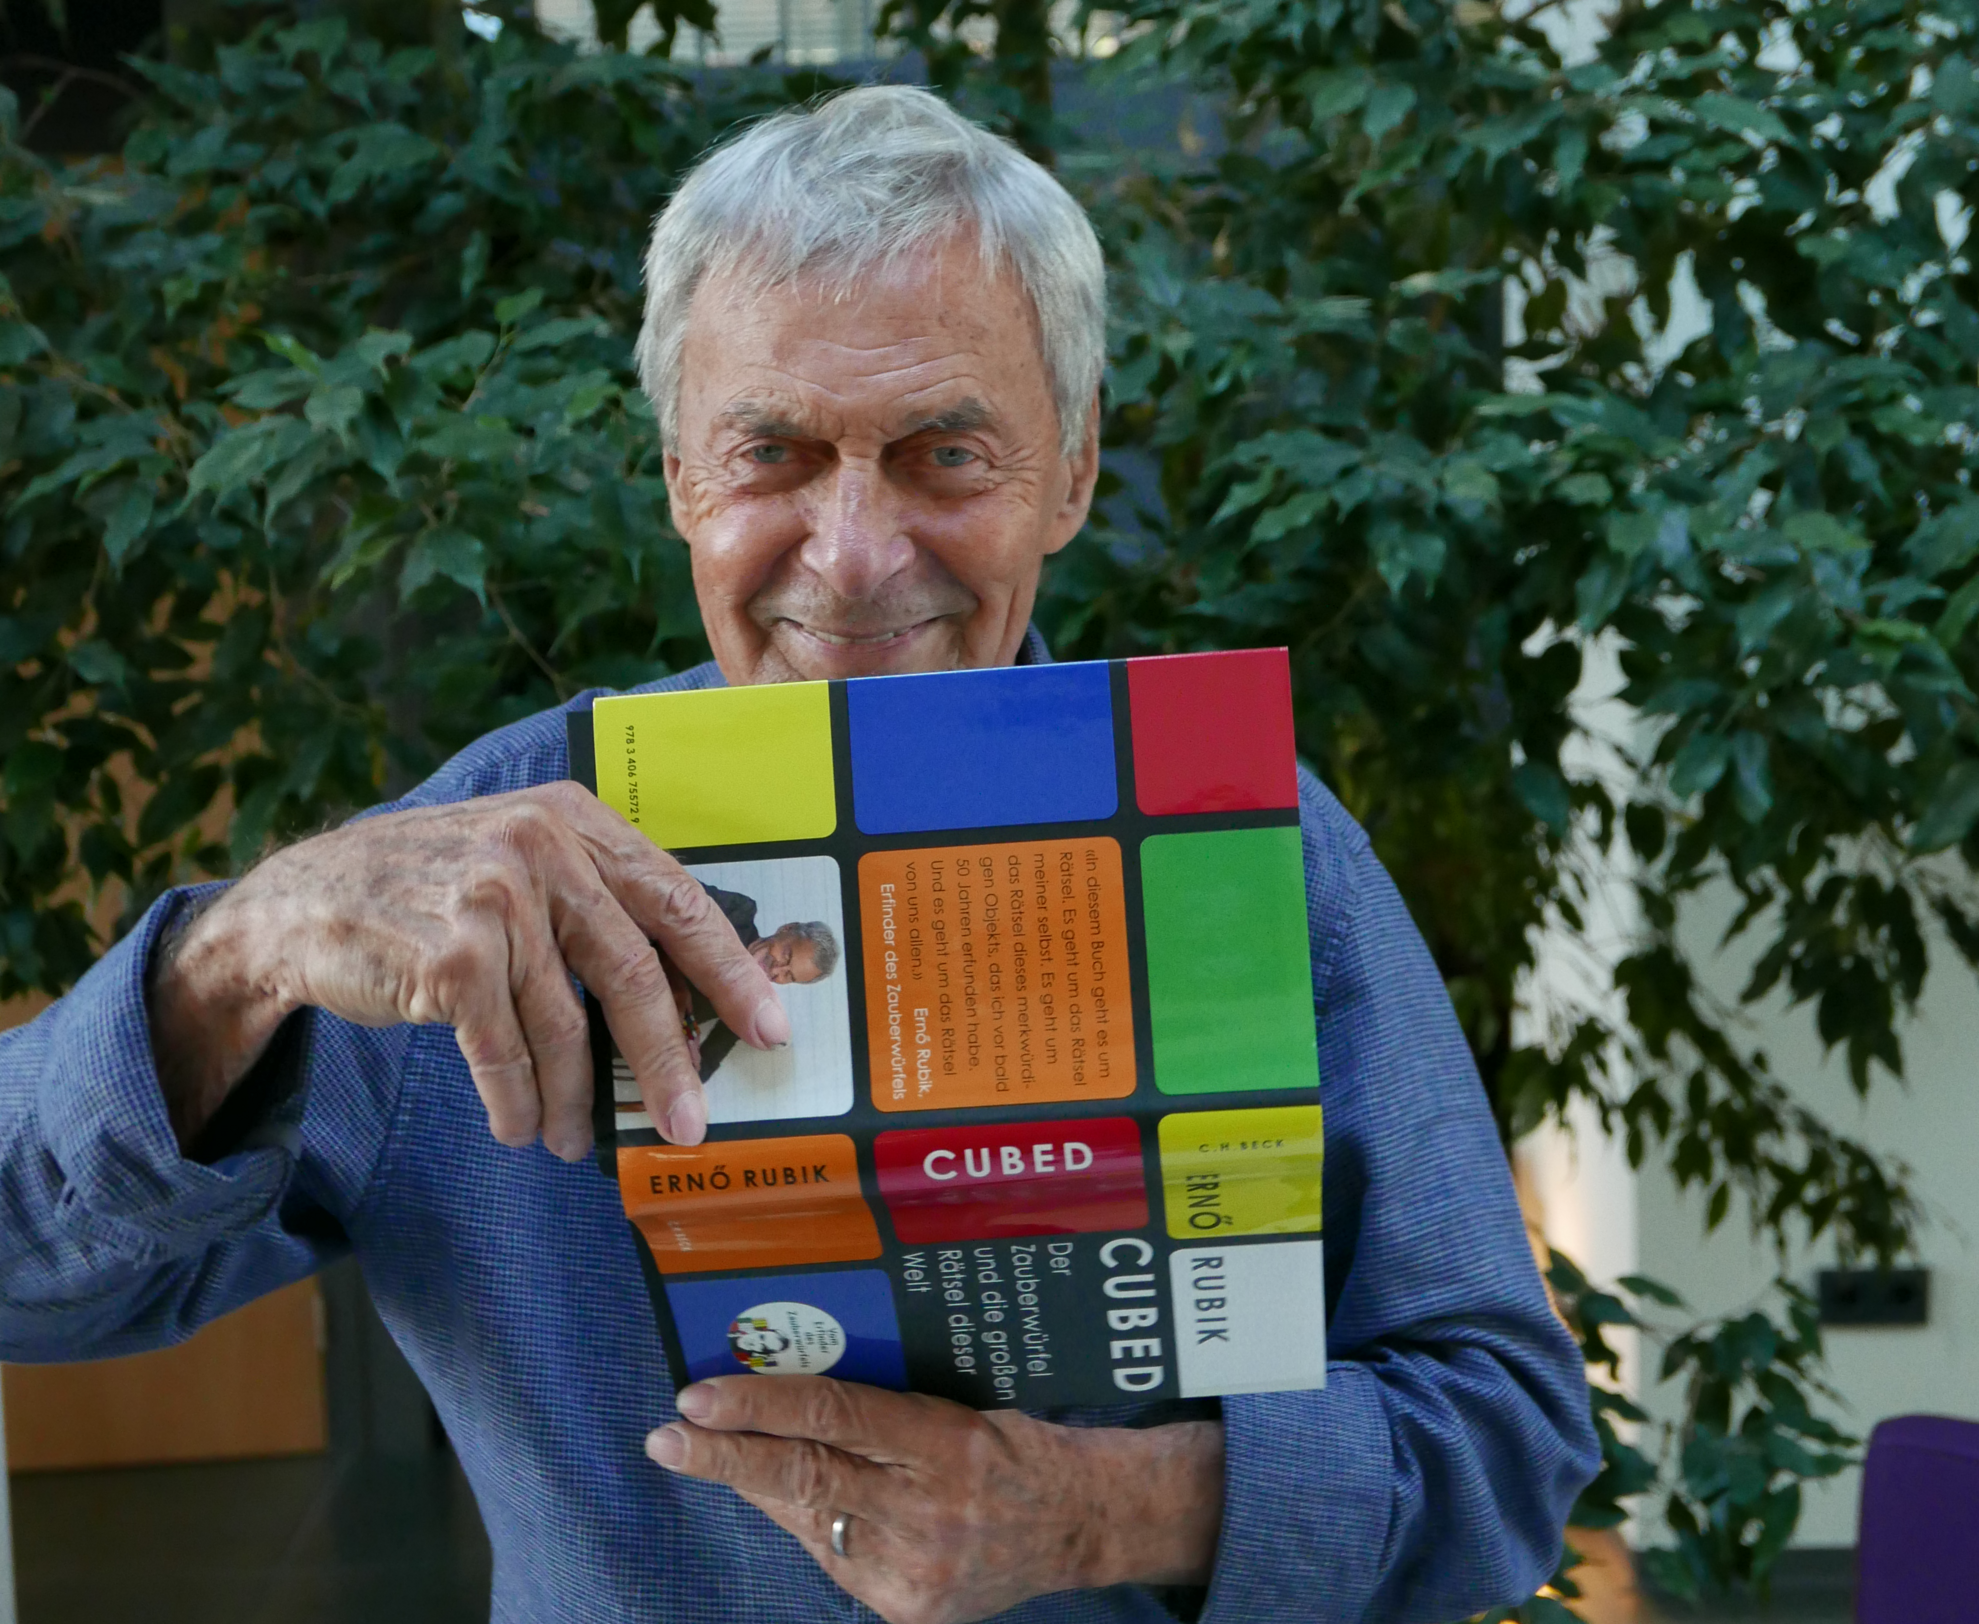 Rubik Ernő: „A rejtvények megmutatják nekünk az utat saját kreativitásunk felé”